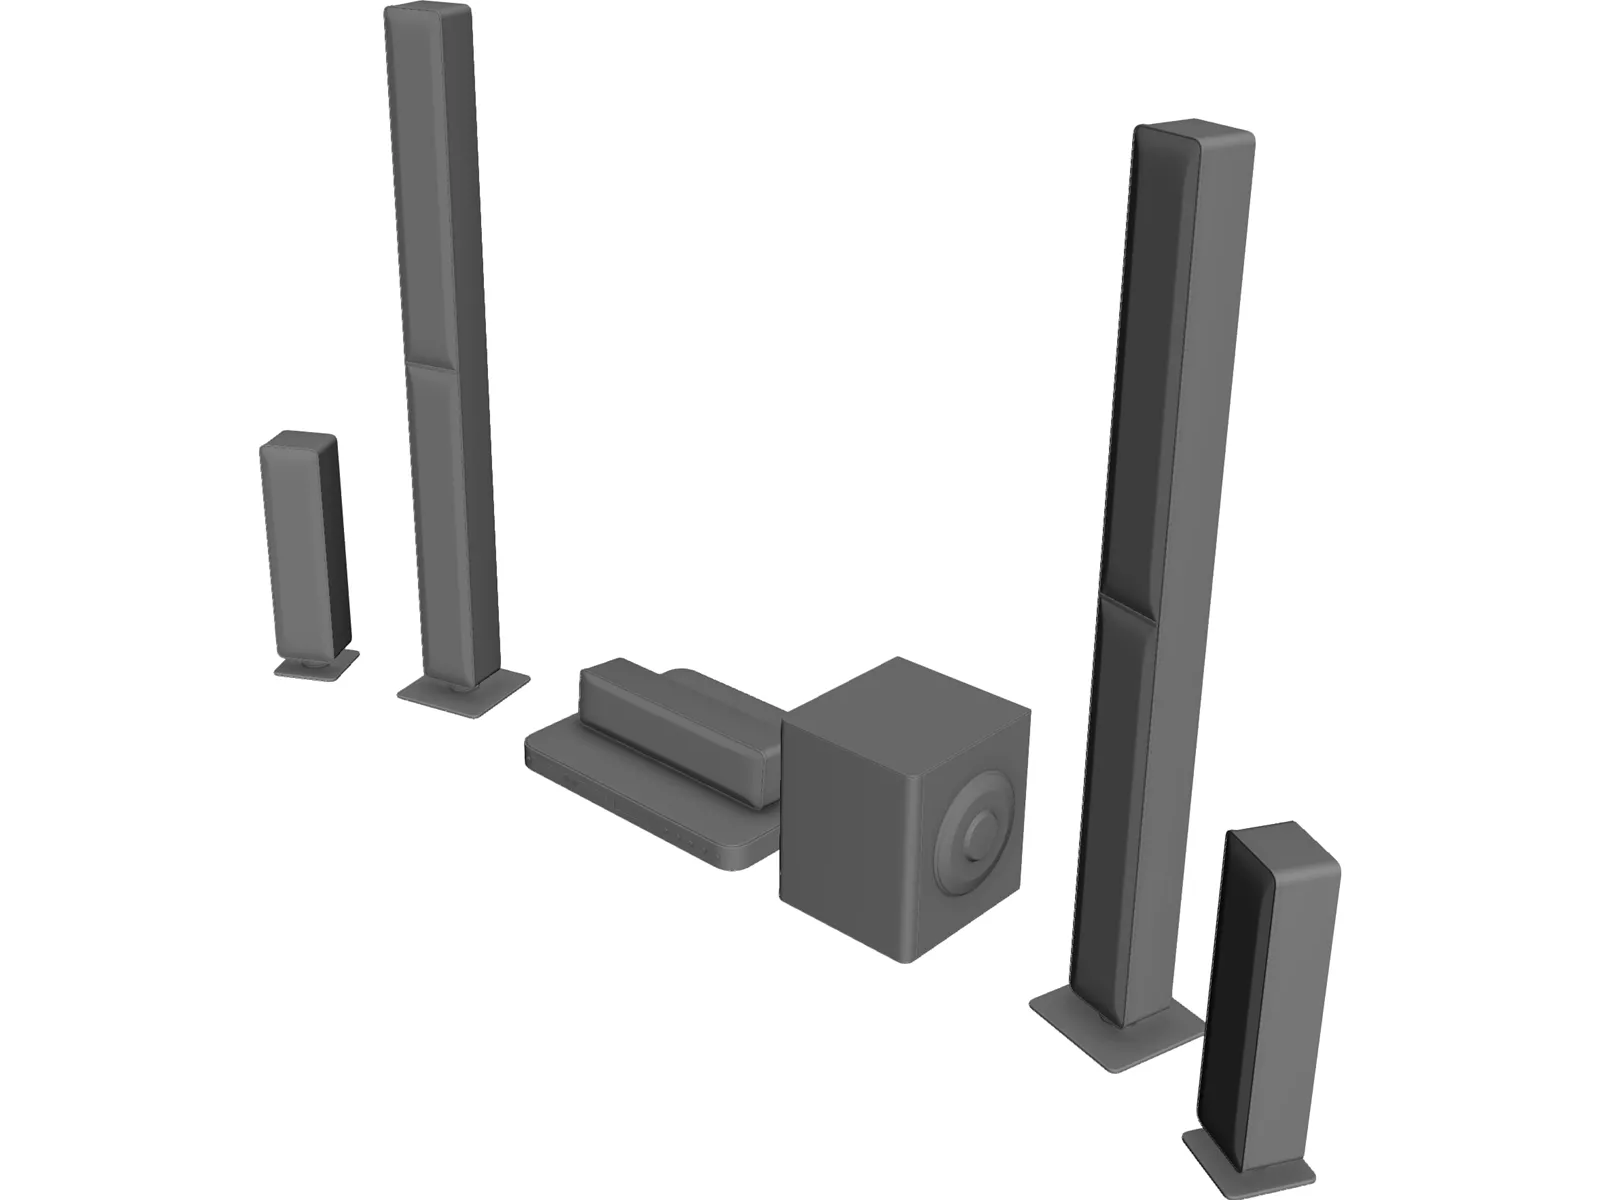 Goldleaf RX3 Speakers 3D Model